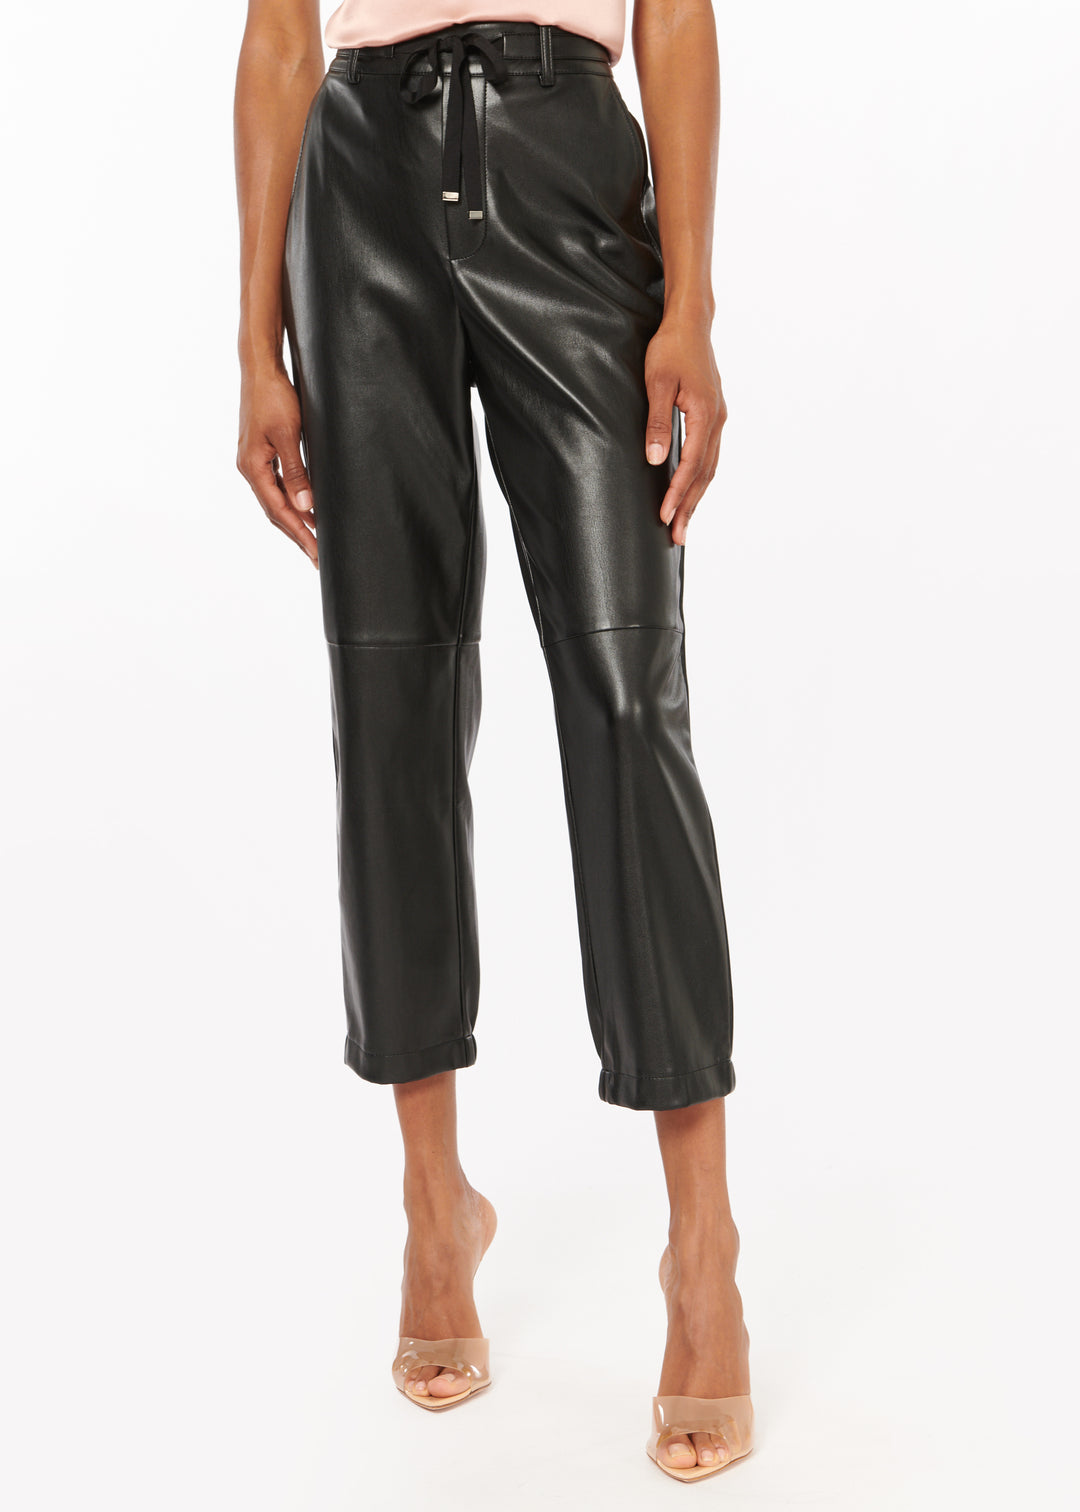 Cami NYC - Adene Vegan Leather Pant in Black